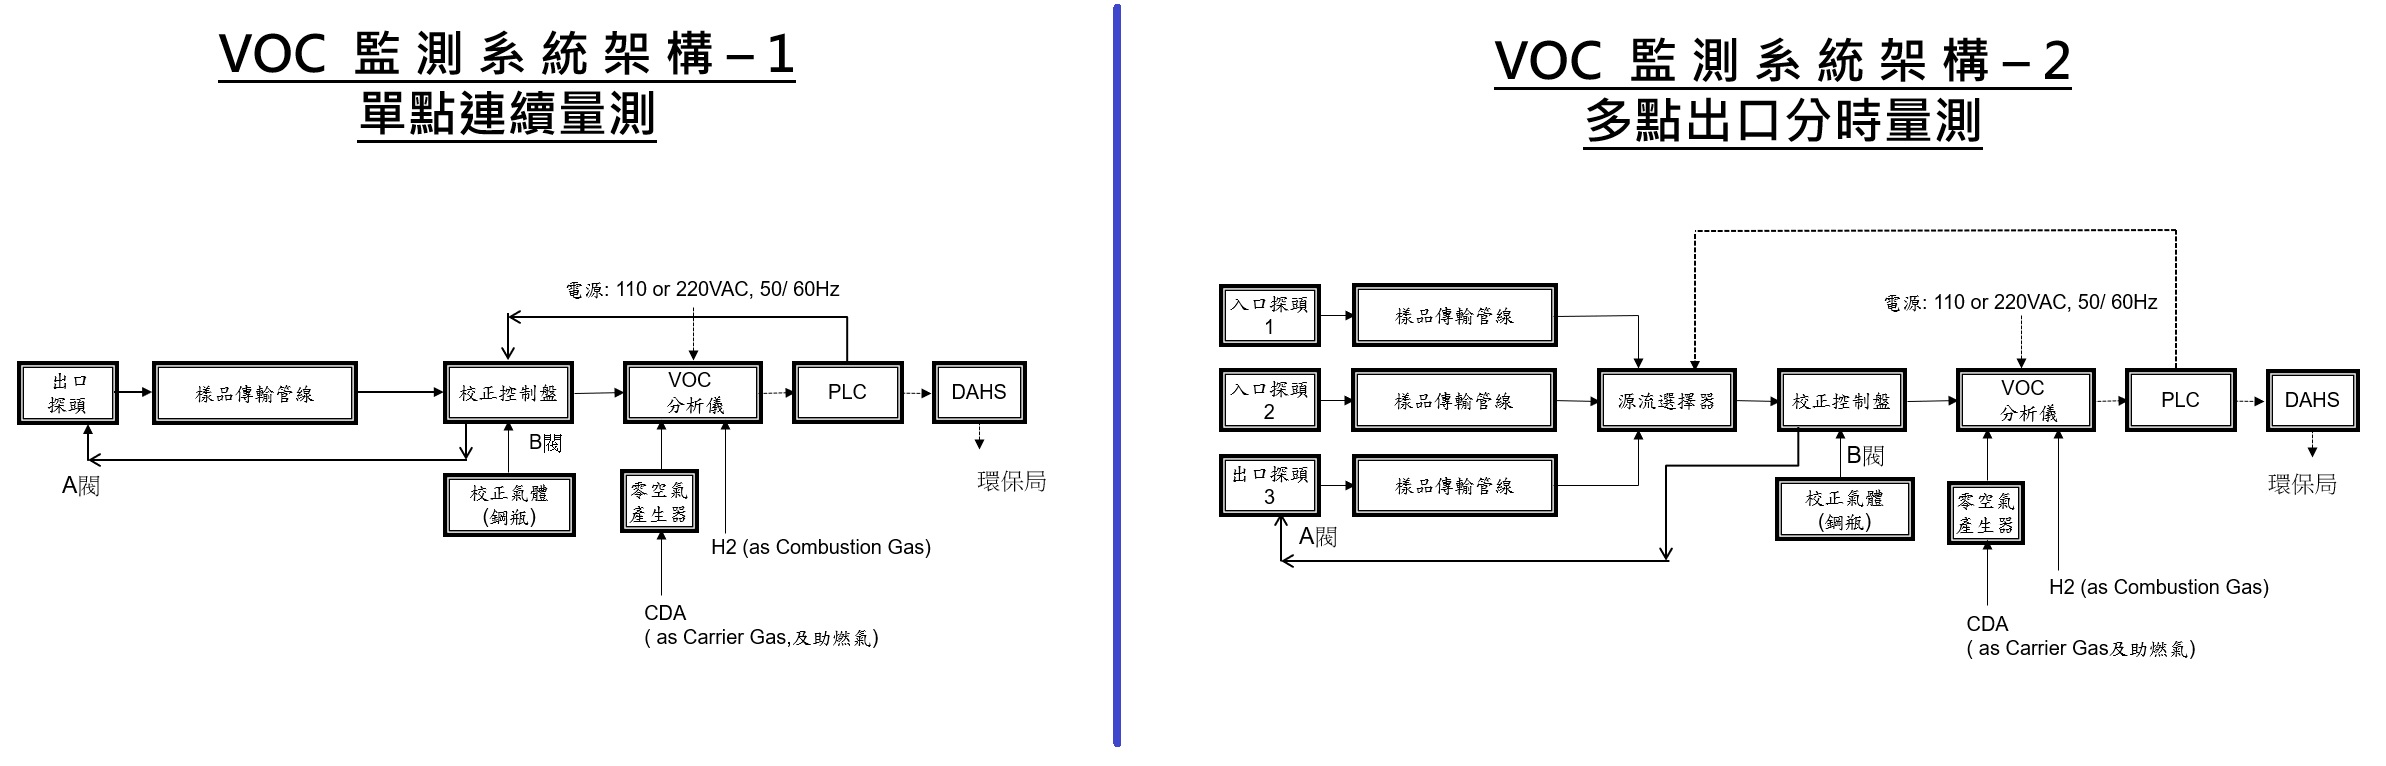 VOC連續監測系統介紹